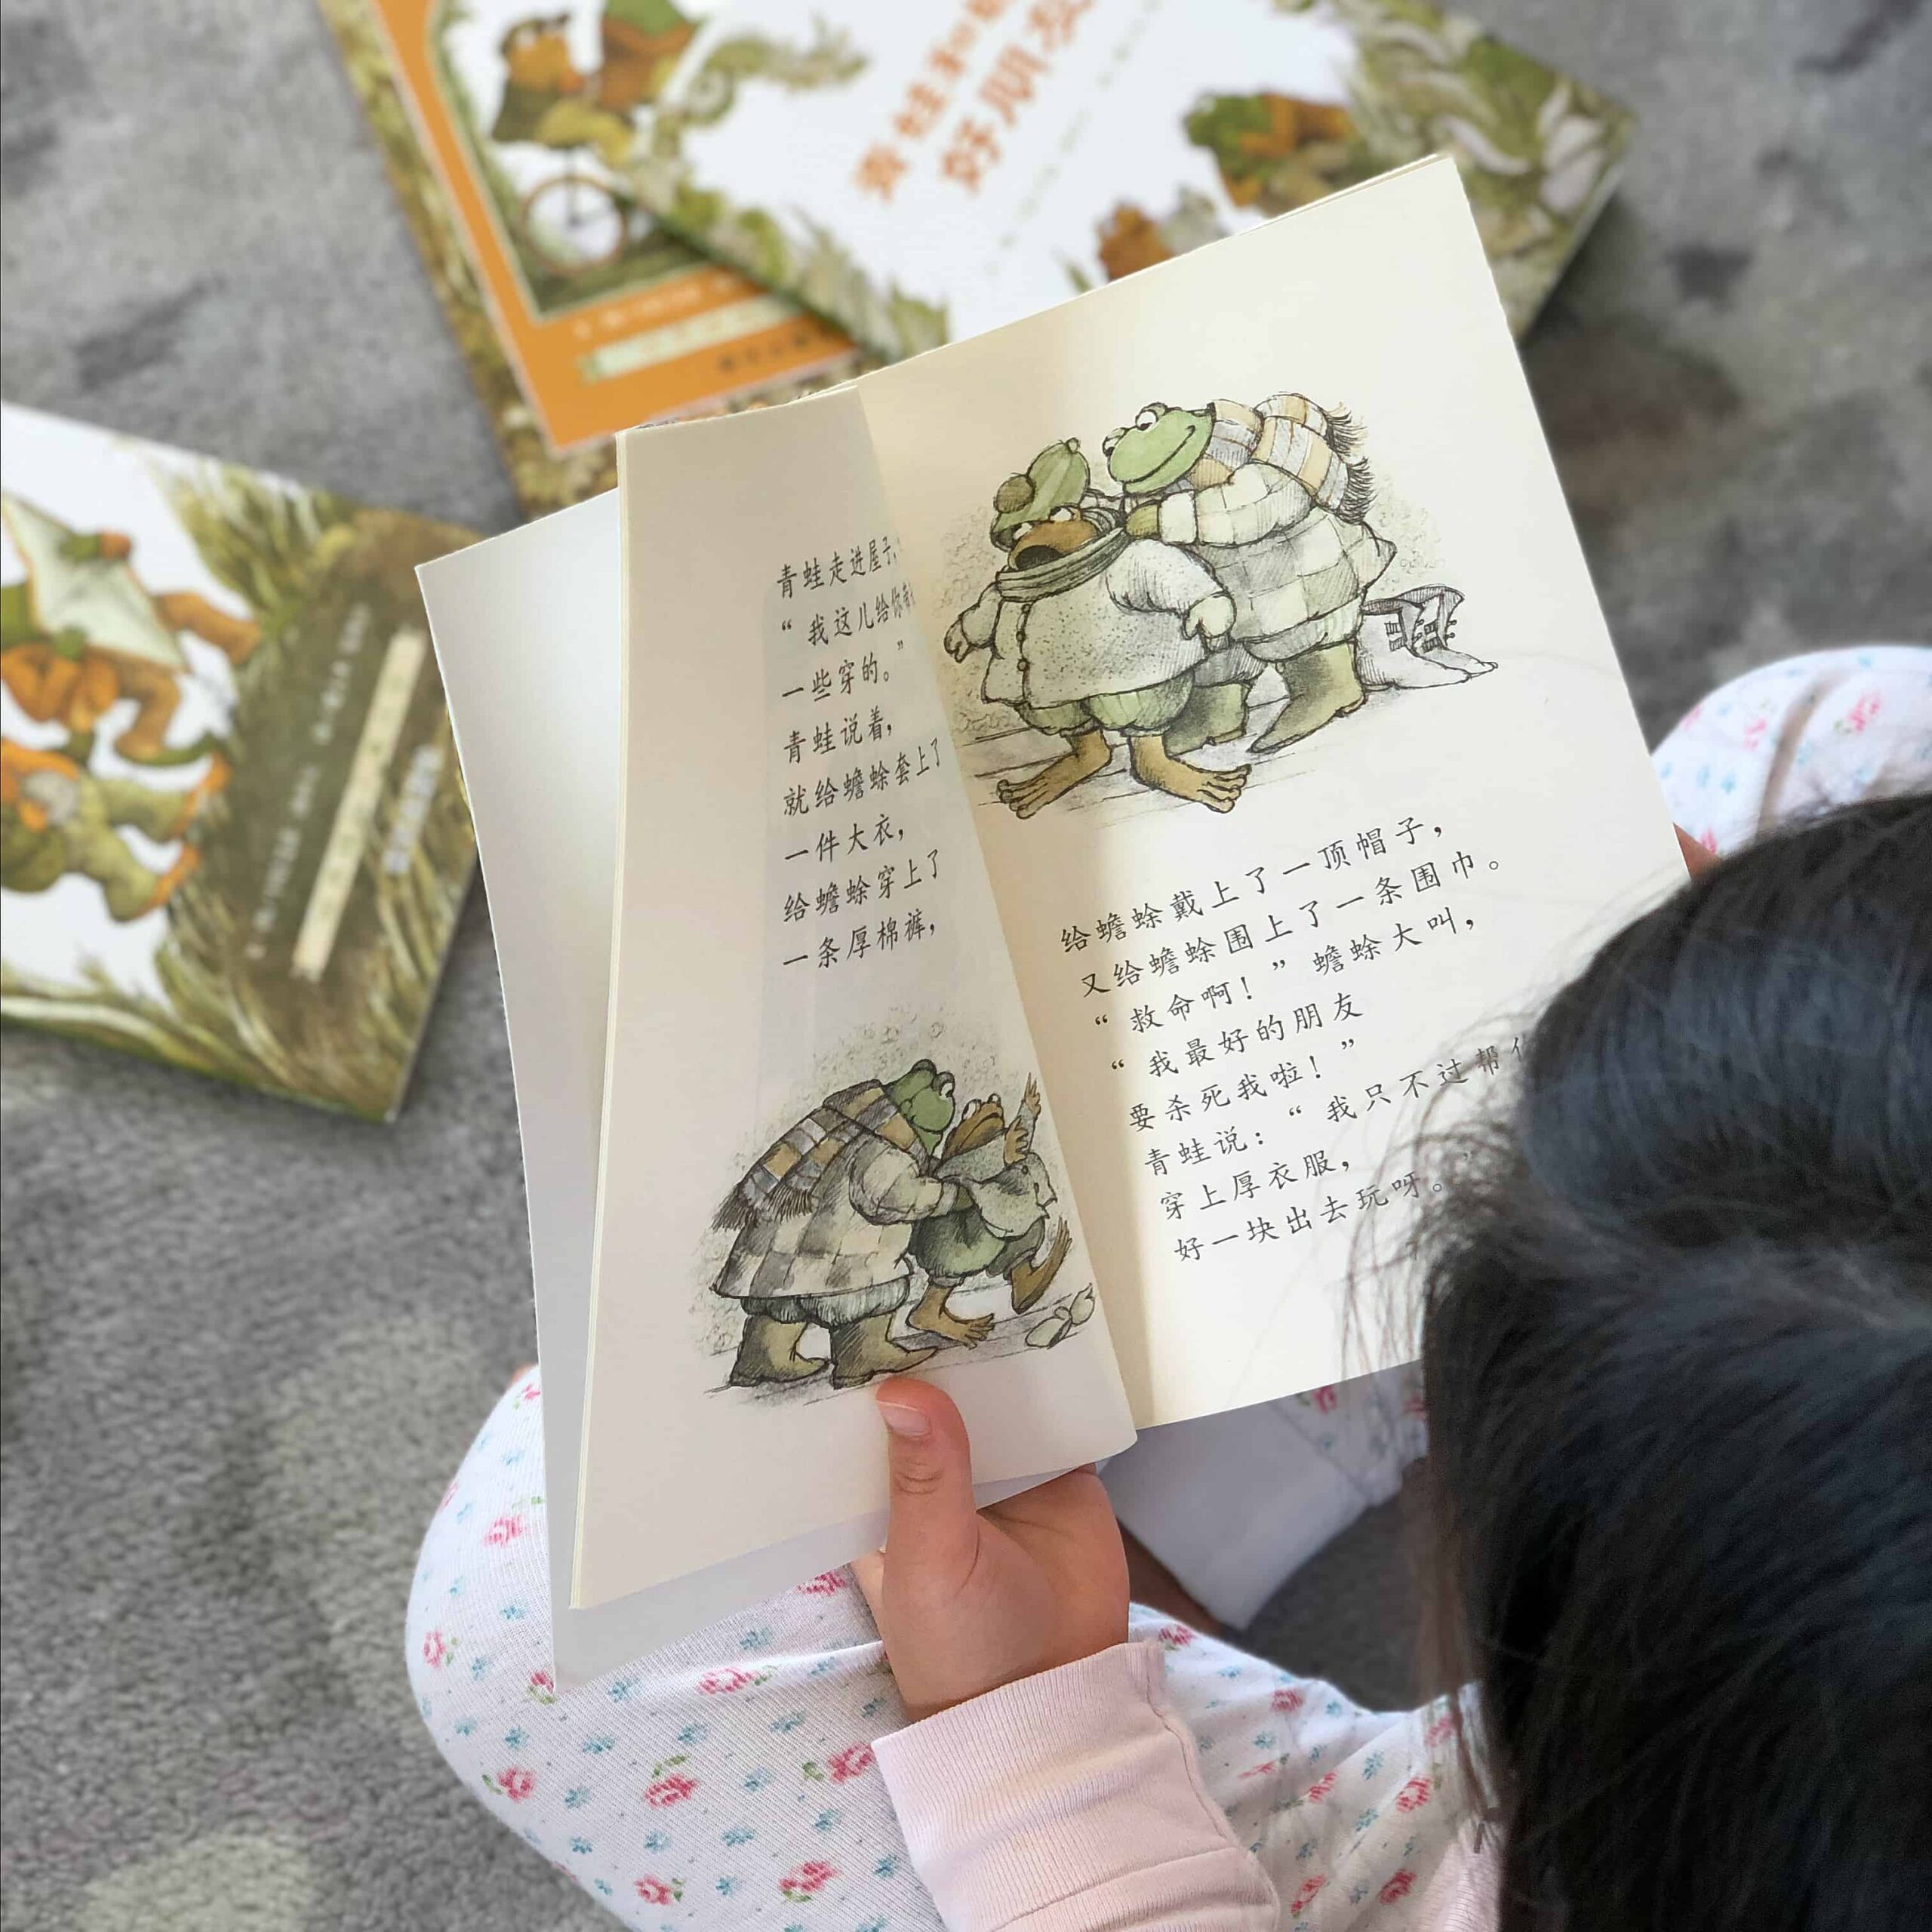 青蛙和蟾蜍 Frog and Toad Books Chinese Bridge Books Review